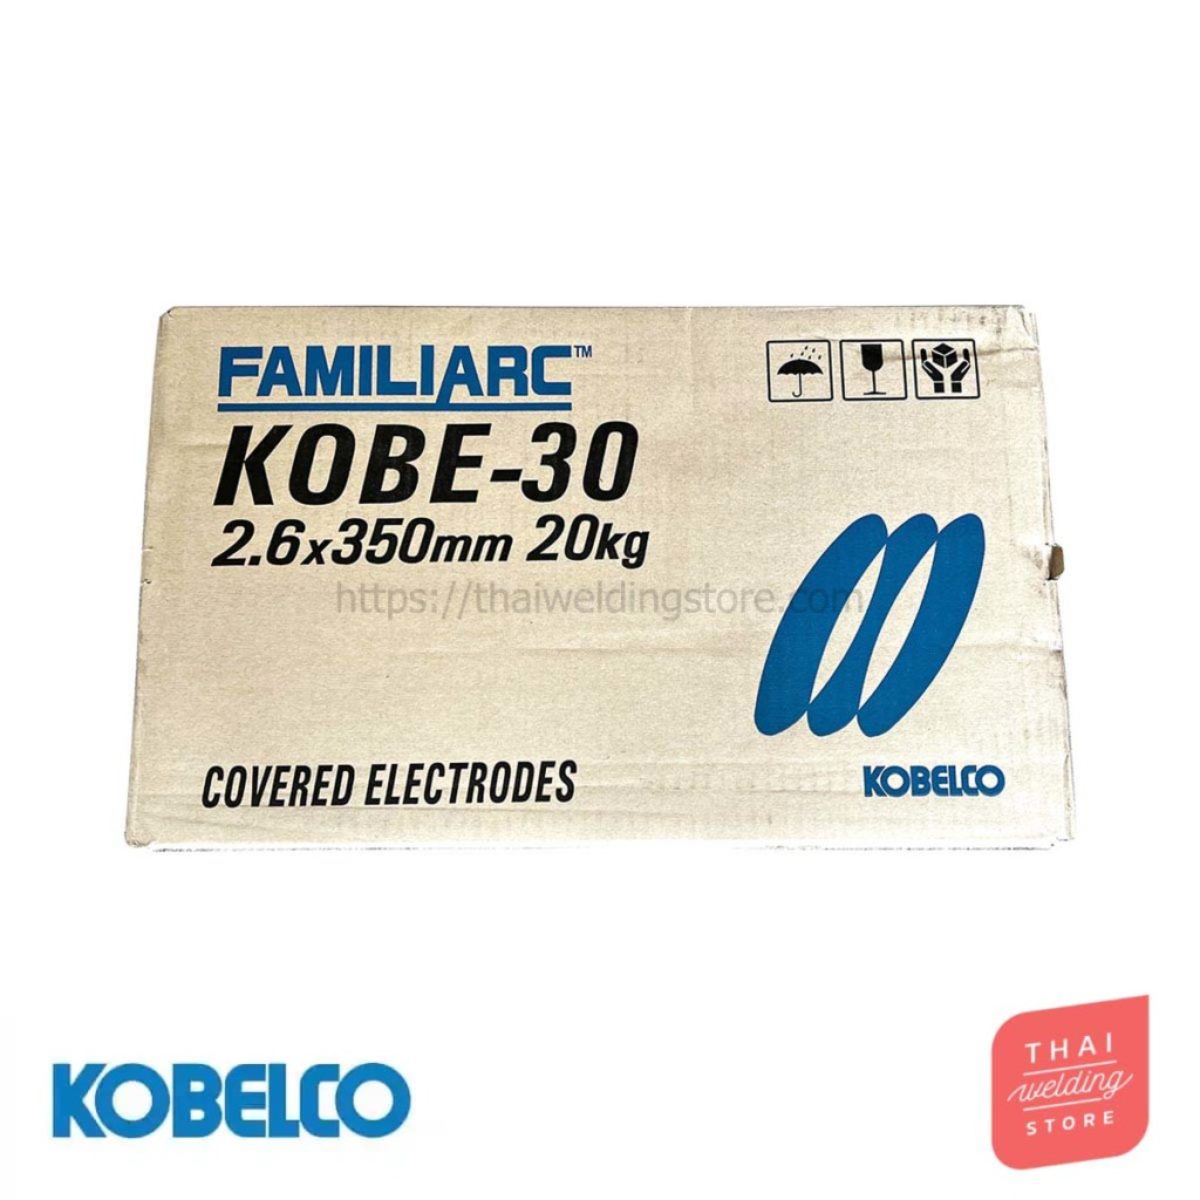 KOBE-30